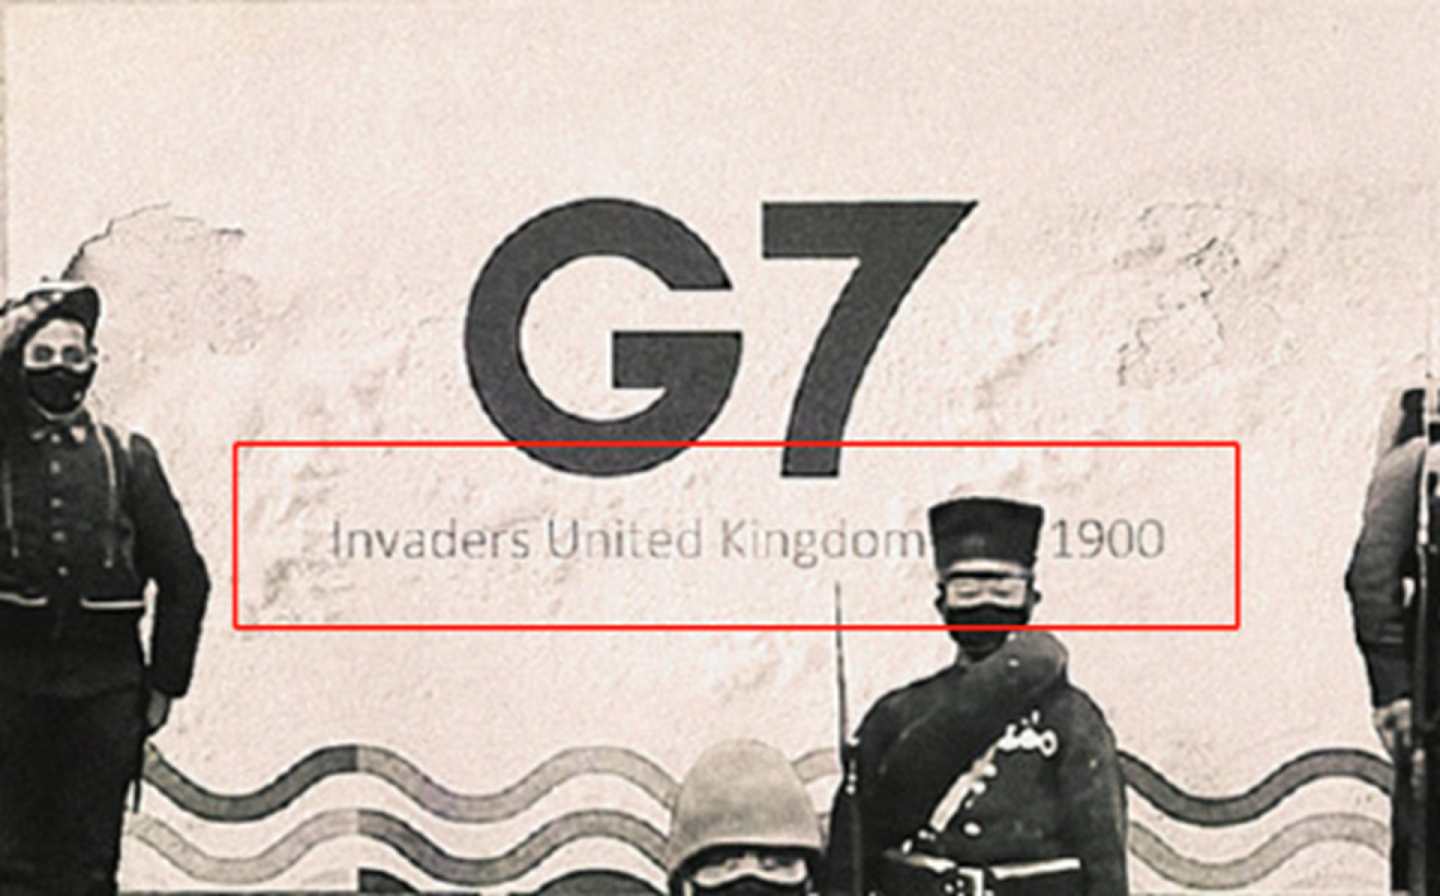 在G7下边的文字，加入了“invaders”，时间也改成了1900年。（微博@乌合麒麟）